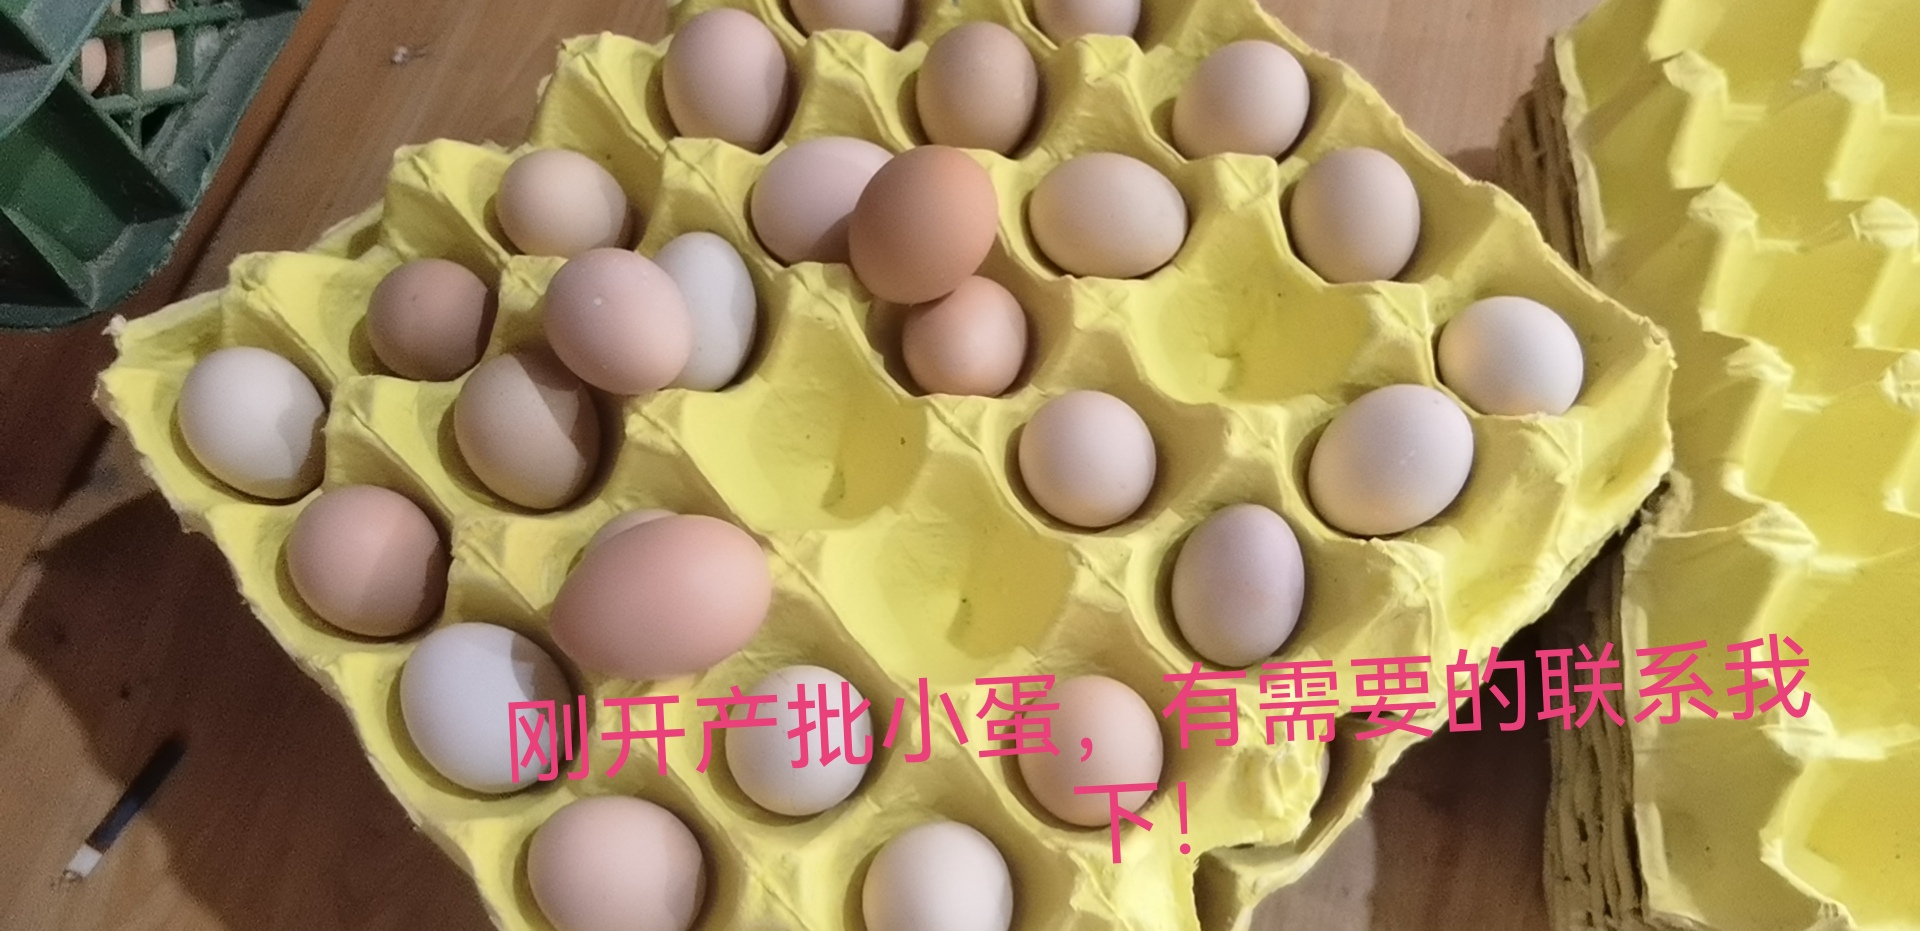 新泰市山东黑鸡蛋初产蛋刚开产蛋小码蛋粉壳净重27-29/360枚